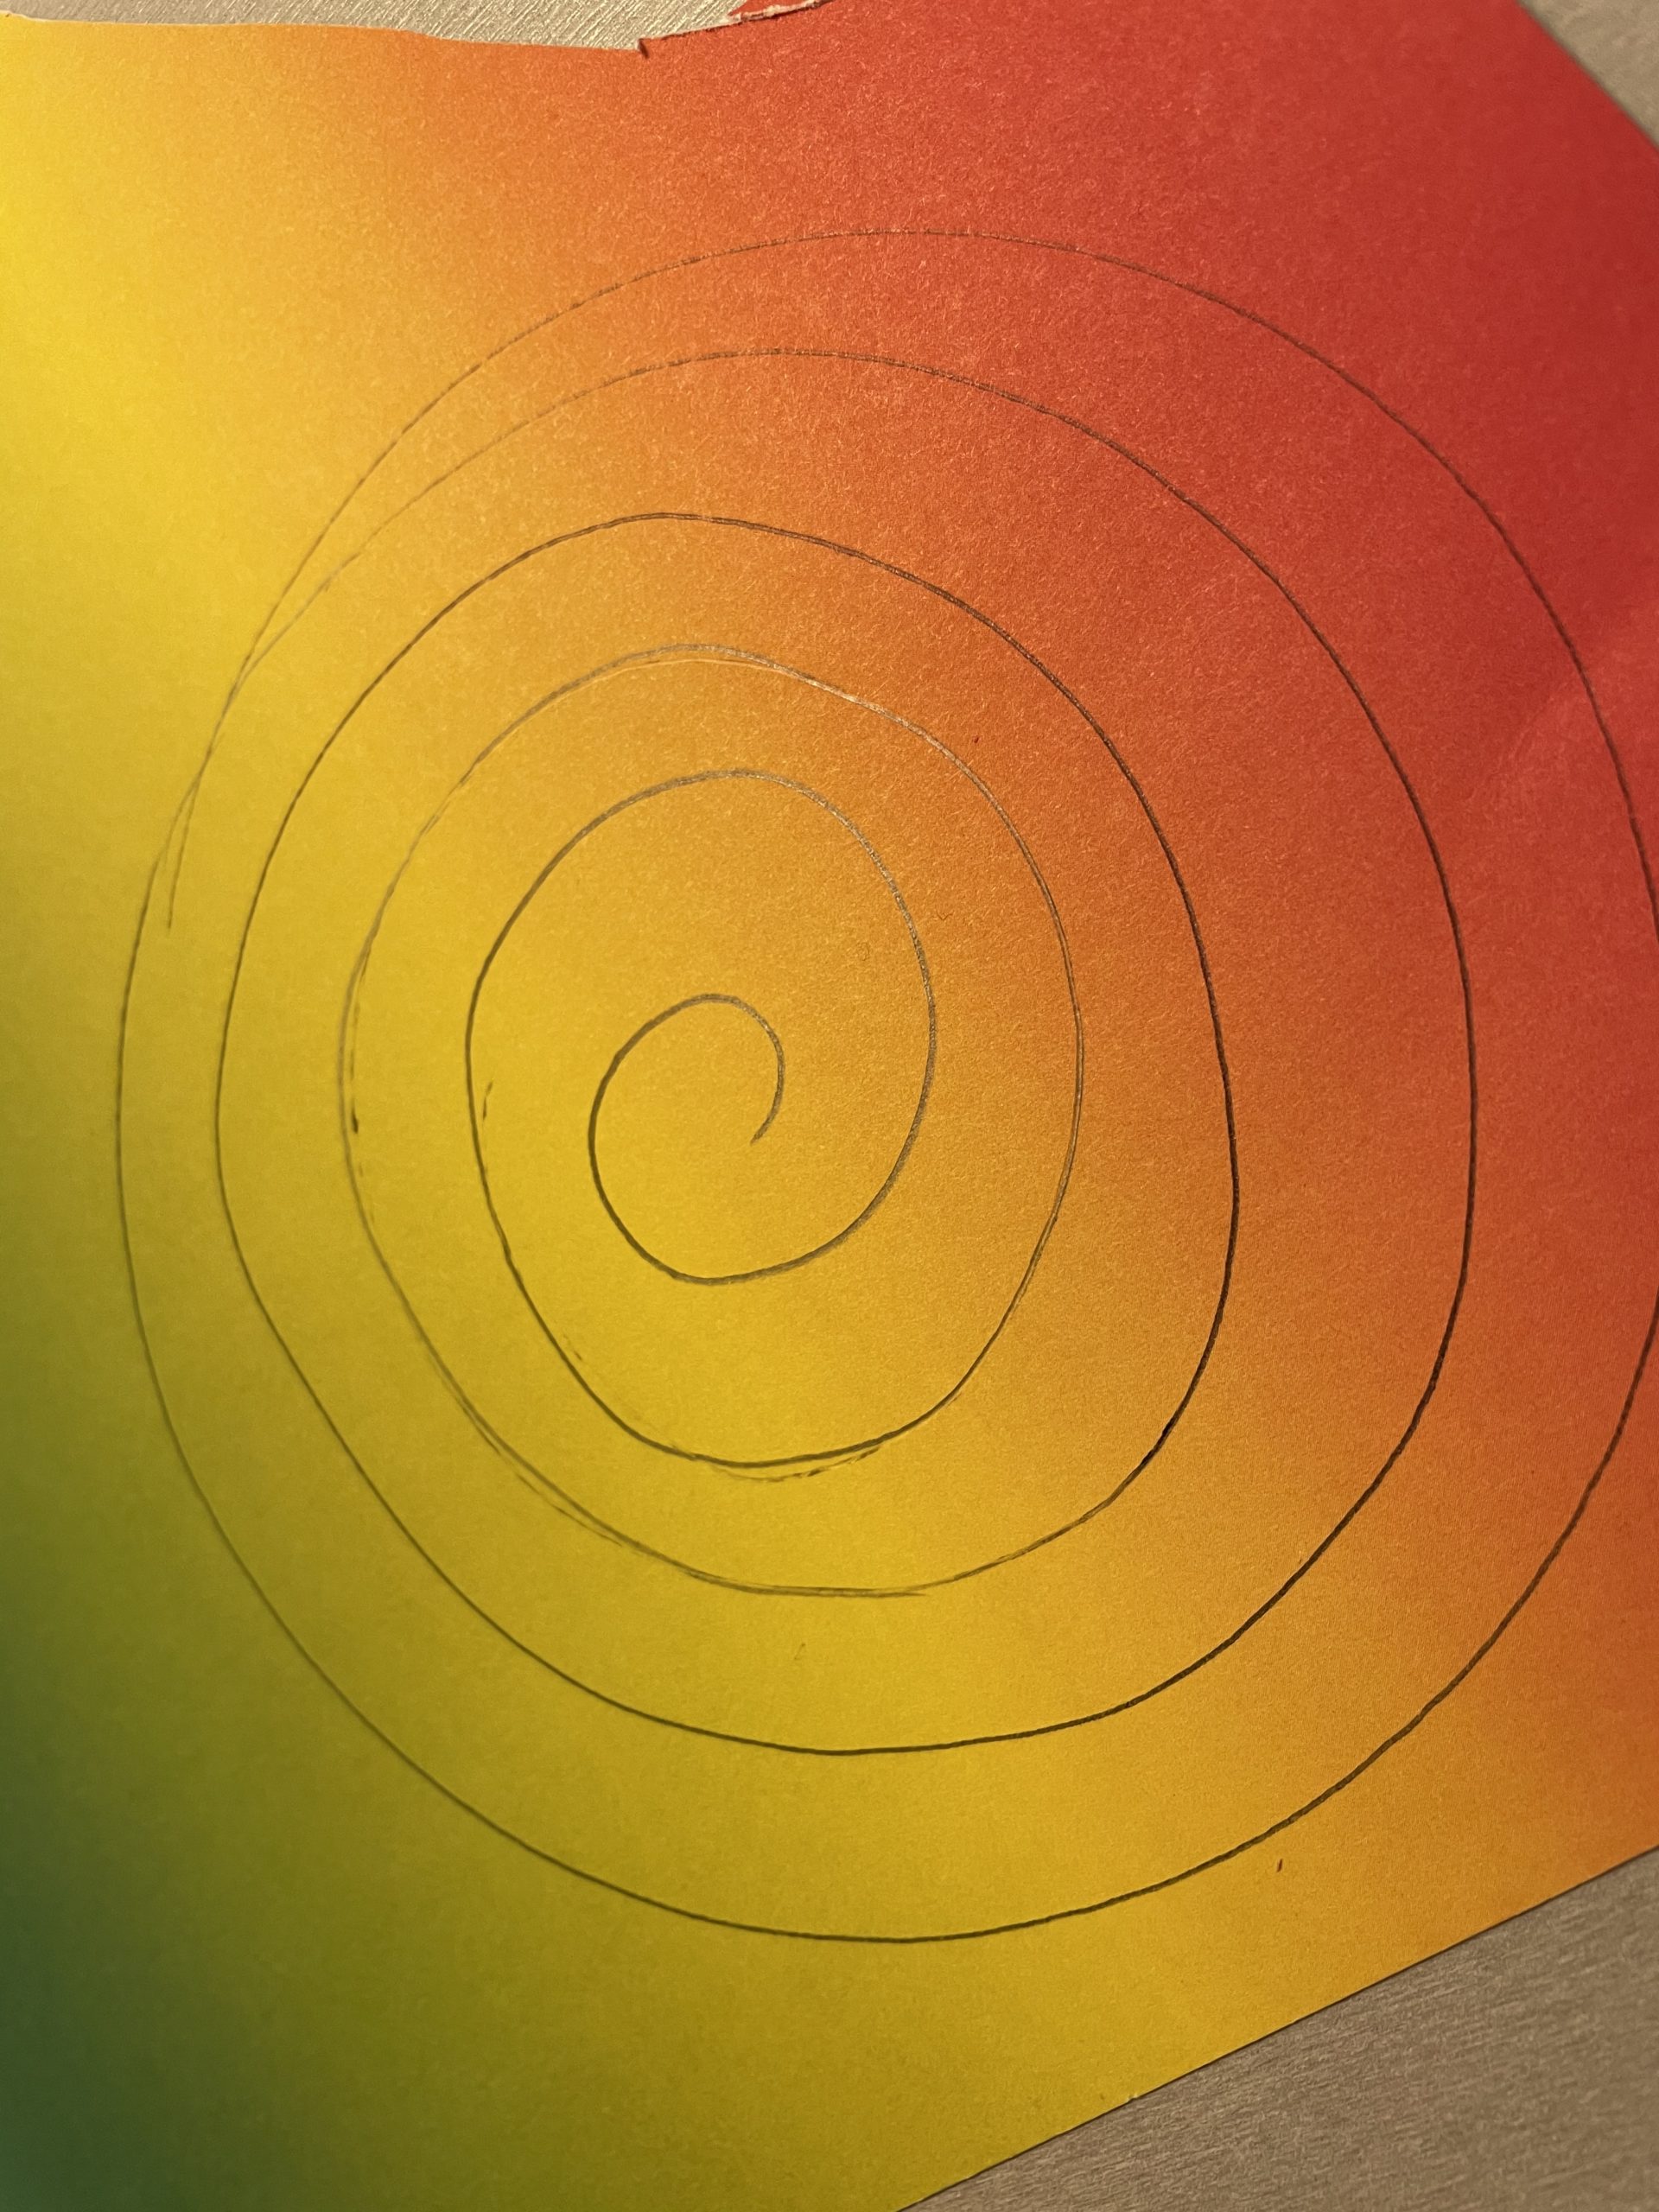 Bild zum Schritt 2 für die Kinder-Beschäftigung: 'Dann malt ihr in den Kreis eine Spirale. Die Spirale...'